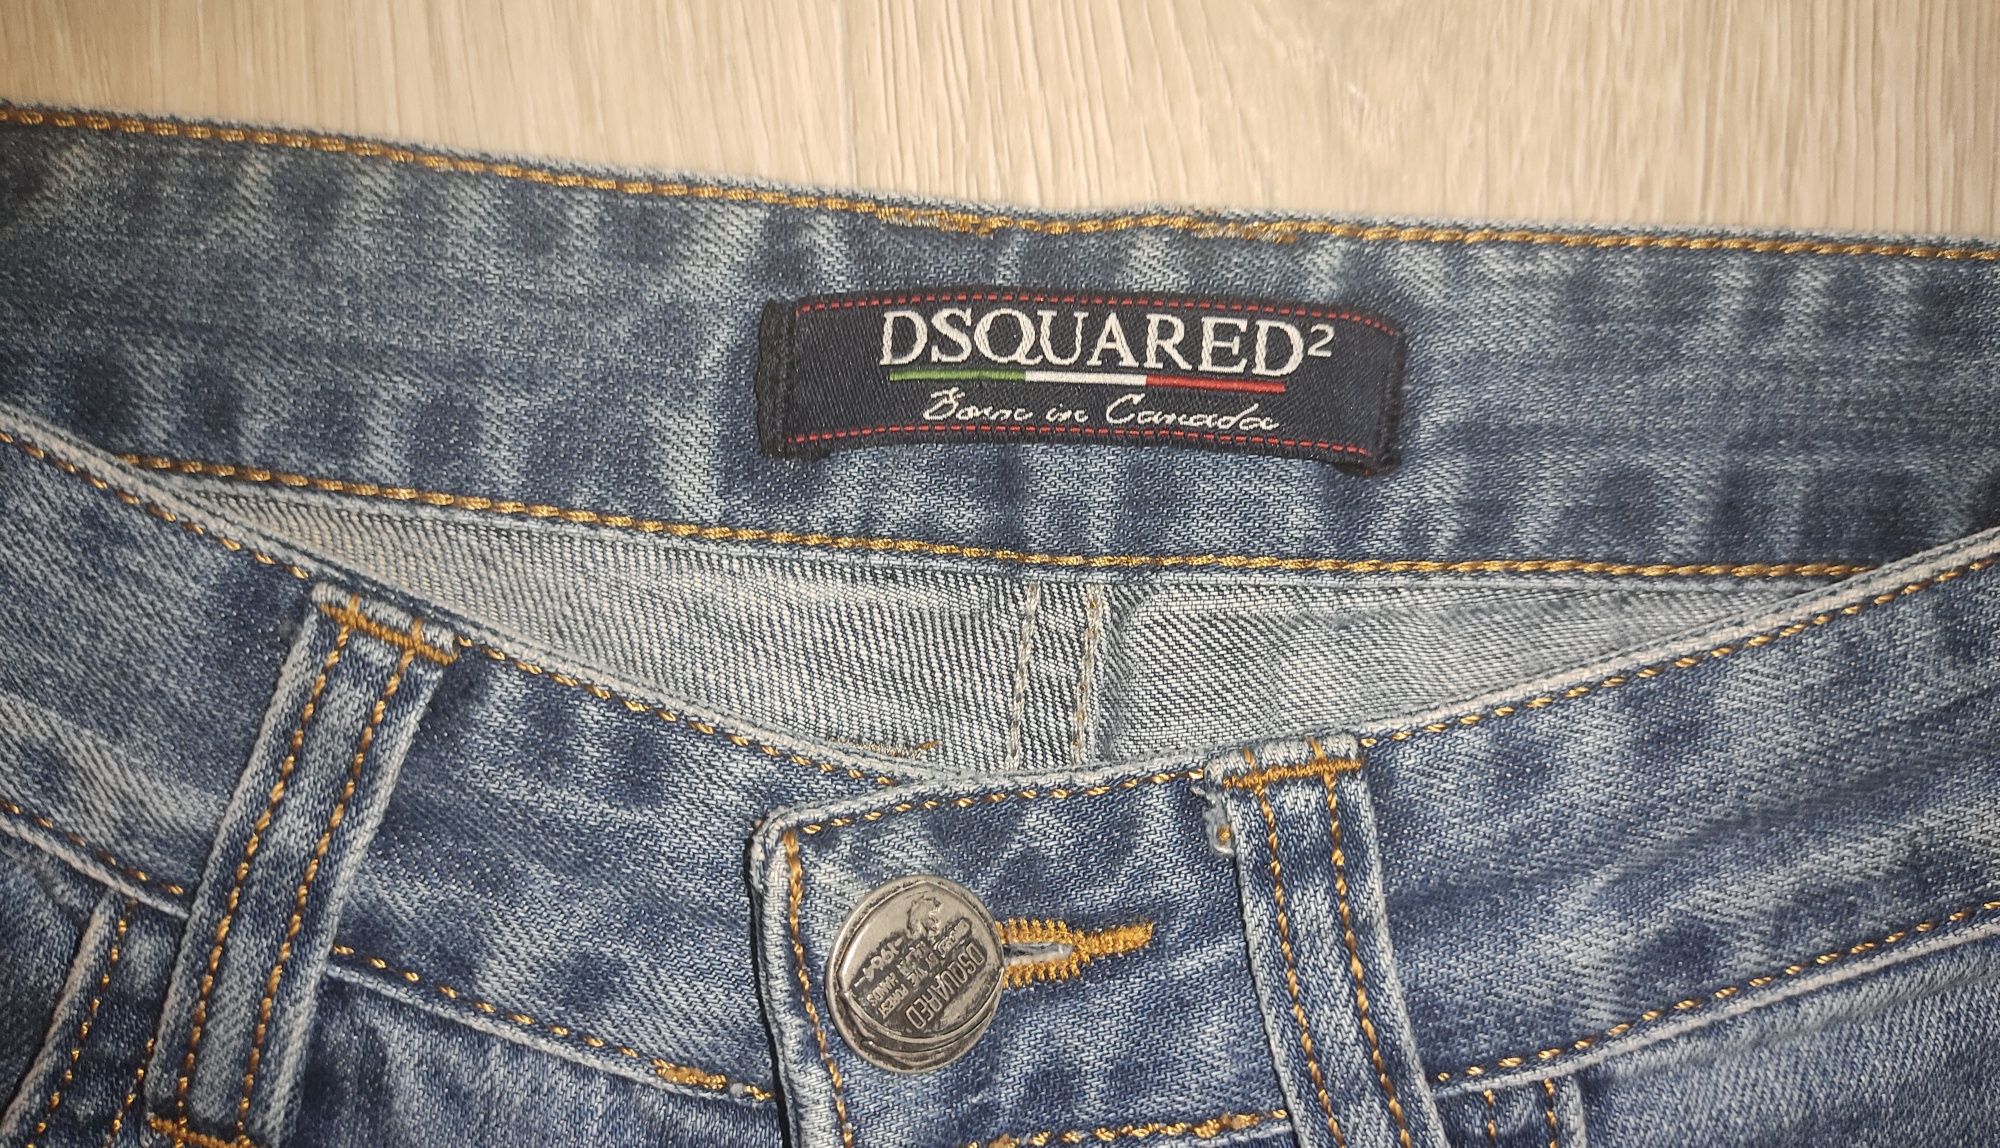 Продам джинсы DSQUARED